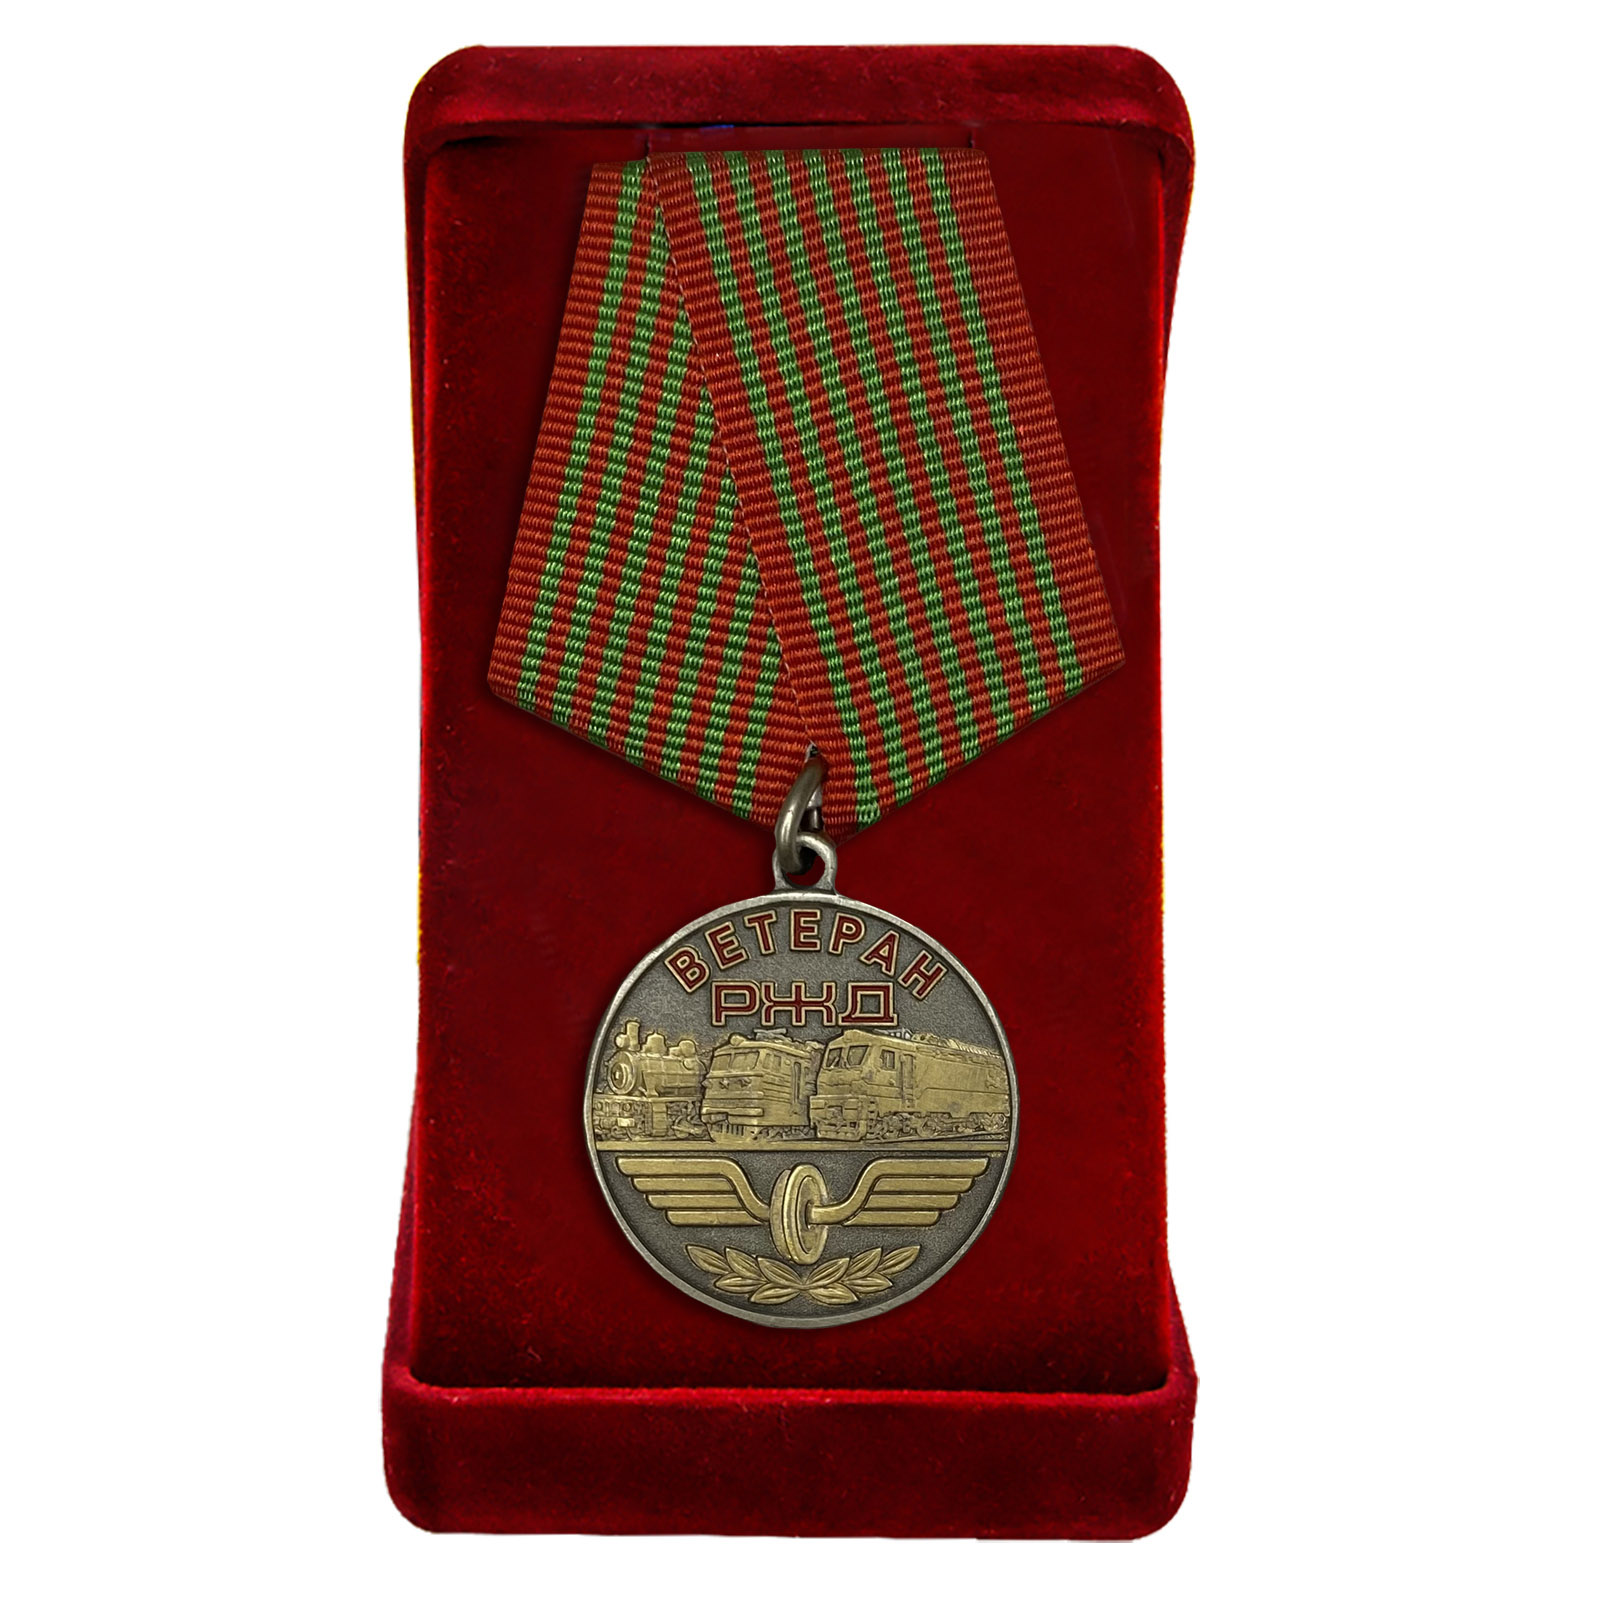 Купить ведомственную медаль "Ветеран РЖД" по лучшей цене